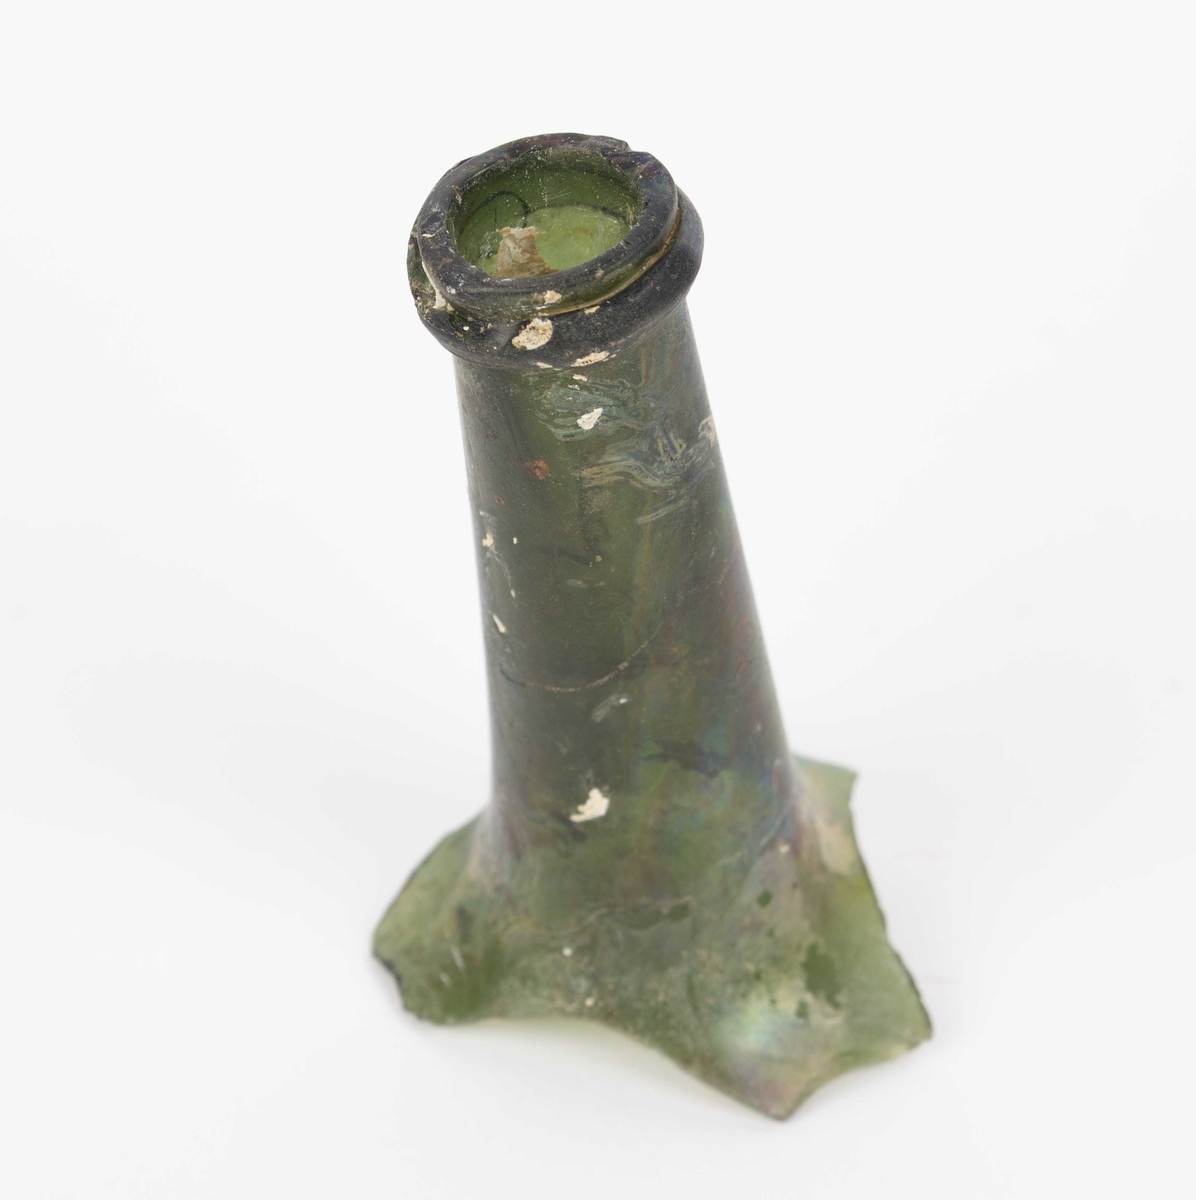 Sjøfunn. Flasketut fra slutten av 1700-tallet funnet ved Måskeskjæret, Bergen